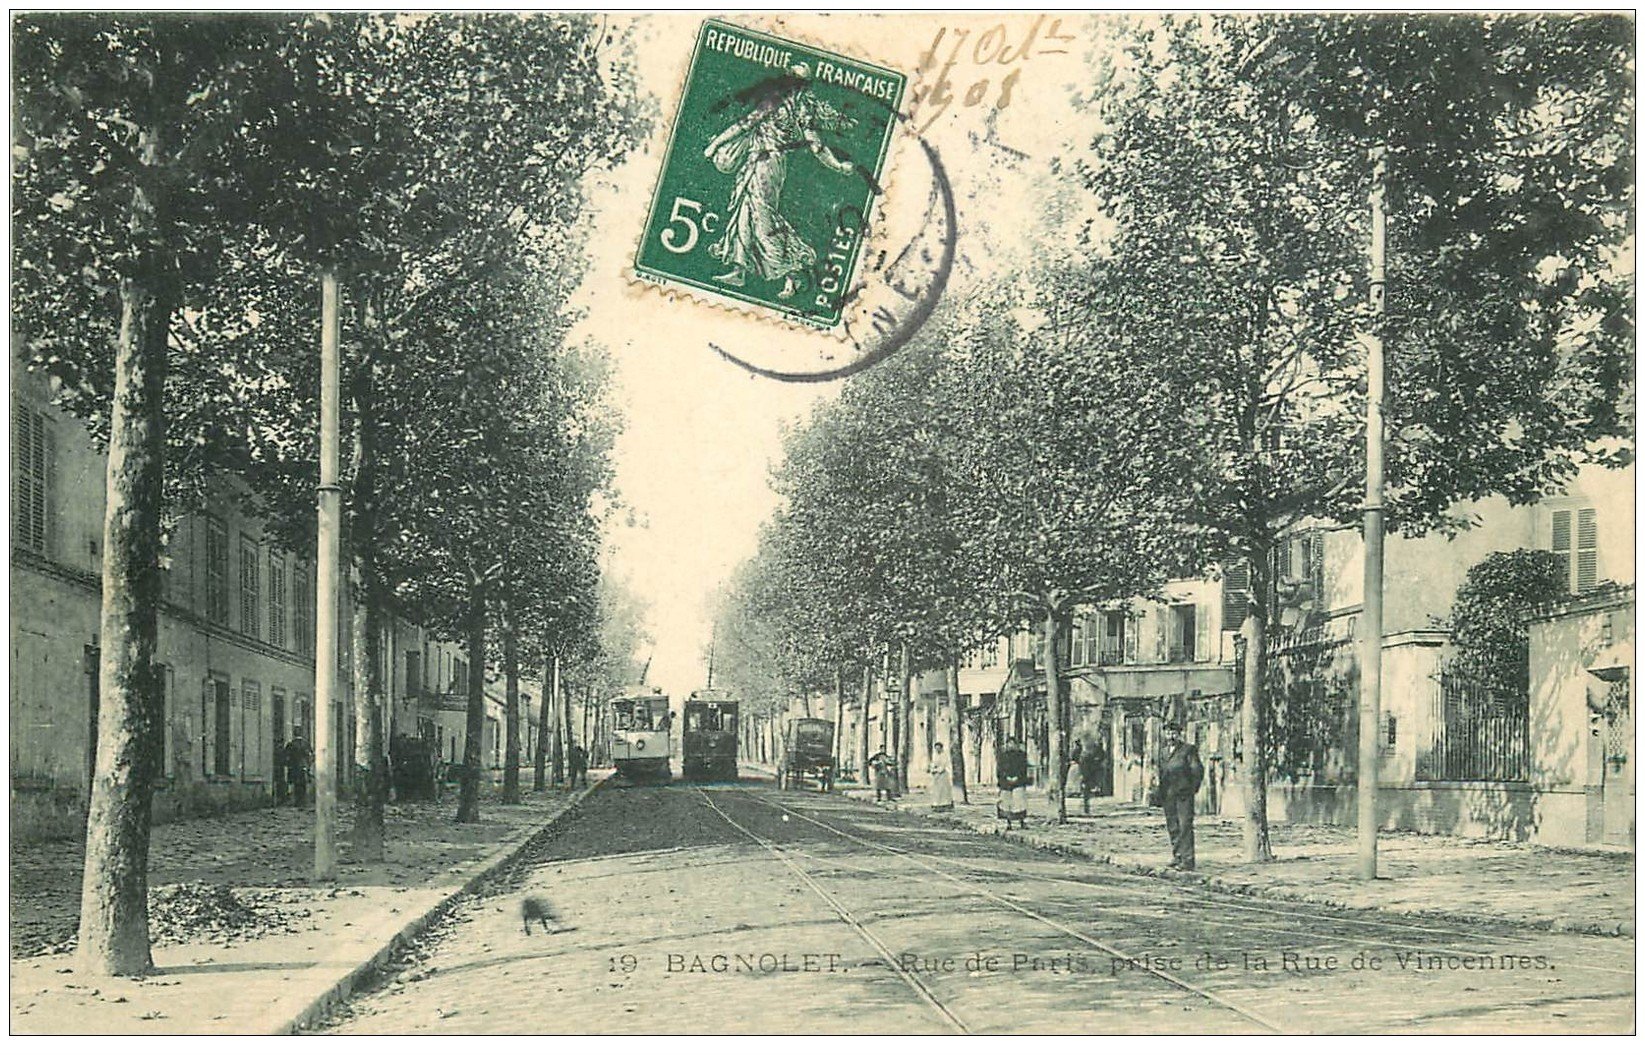 93 BAGNOLET. Tramways Rue de Paris 1908. Rue qui reliait Porte de Bagnolet à la Mairie